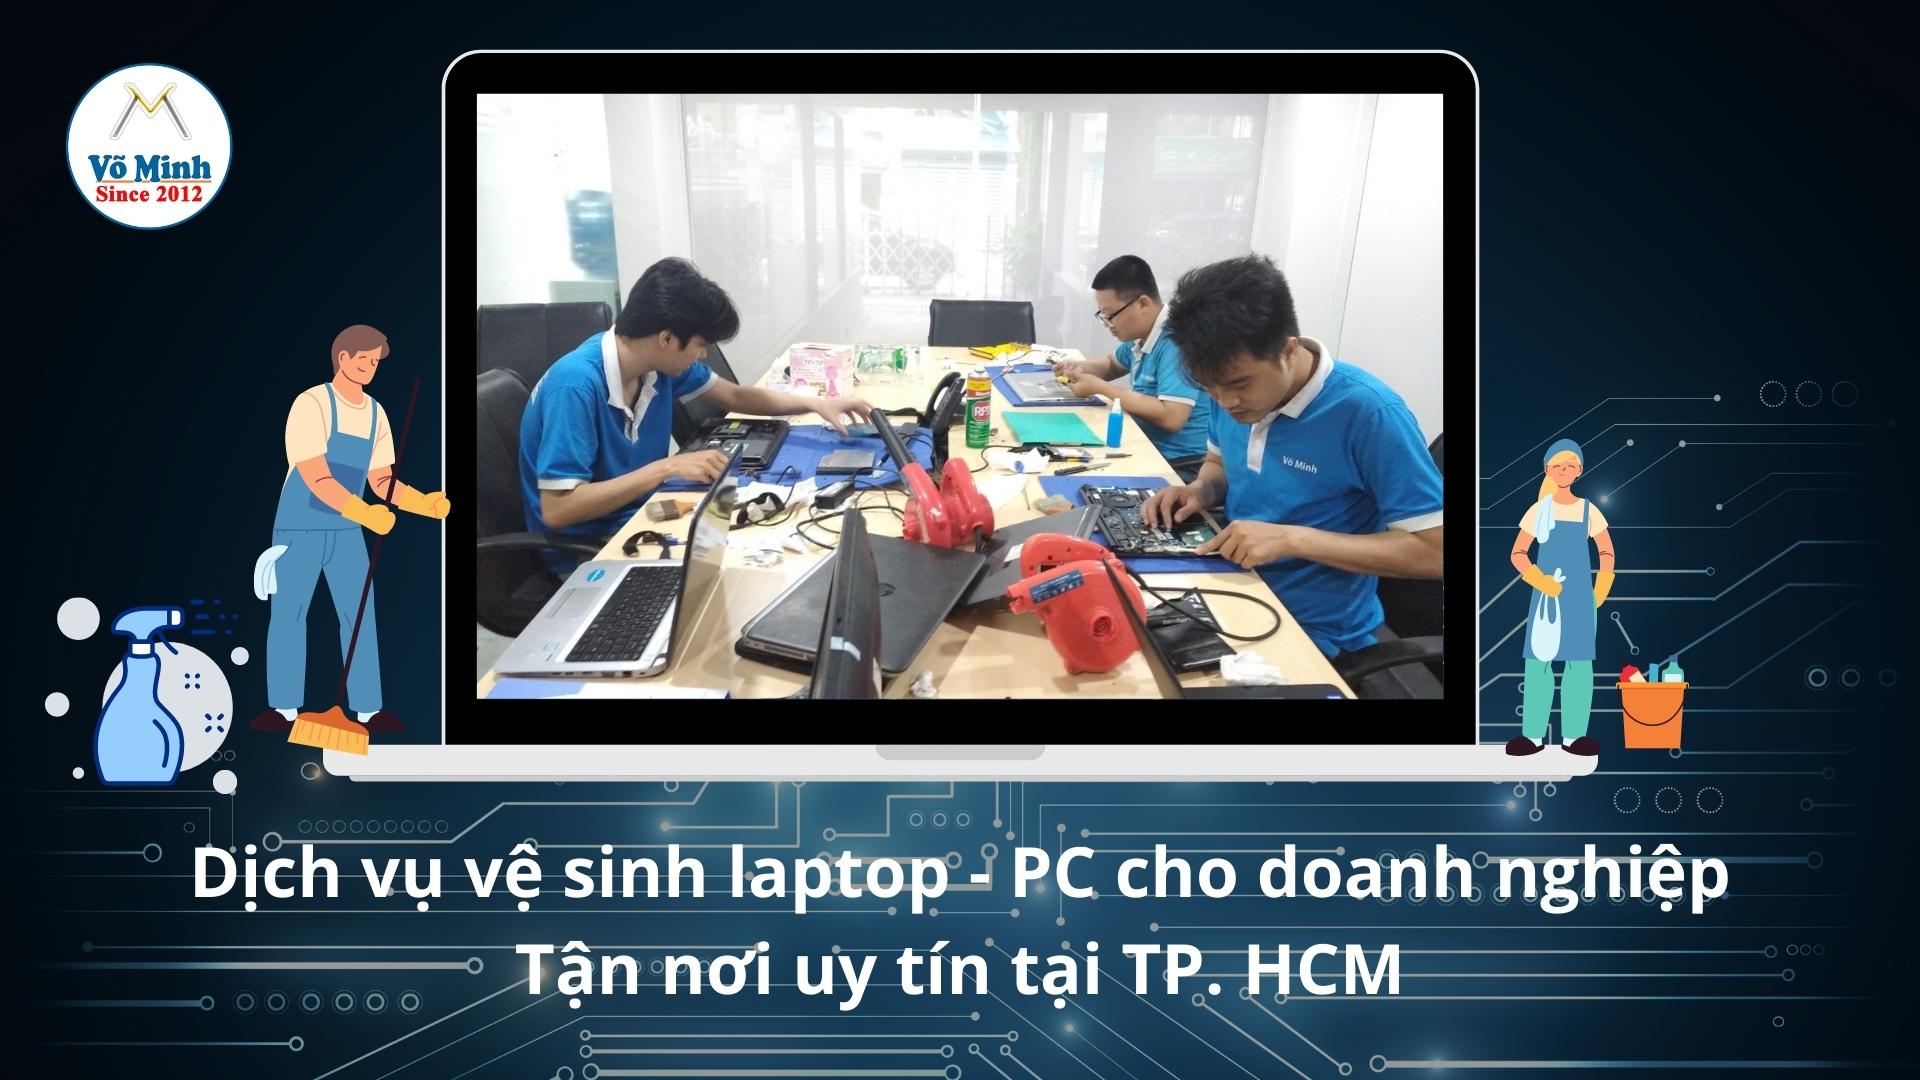 Dịch vụ vệ sinh laptop - PC cho doanh nghiệp tận nơi uy tín tại TP. HCM